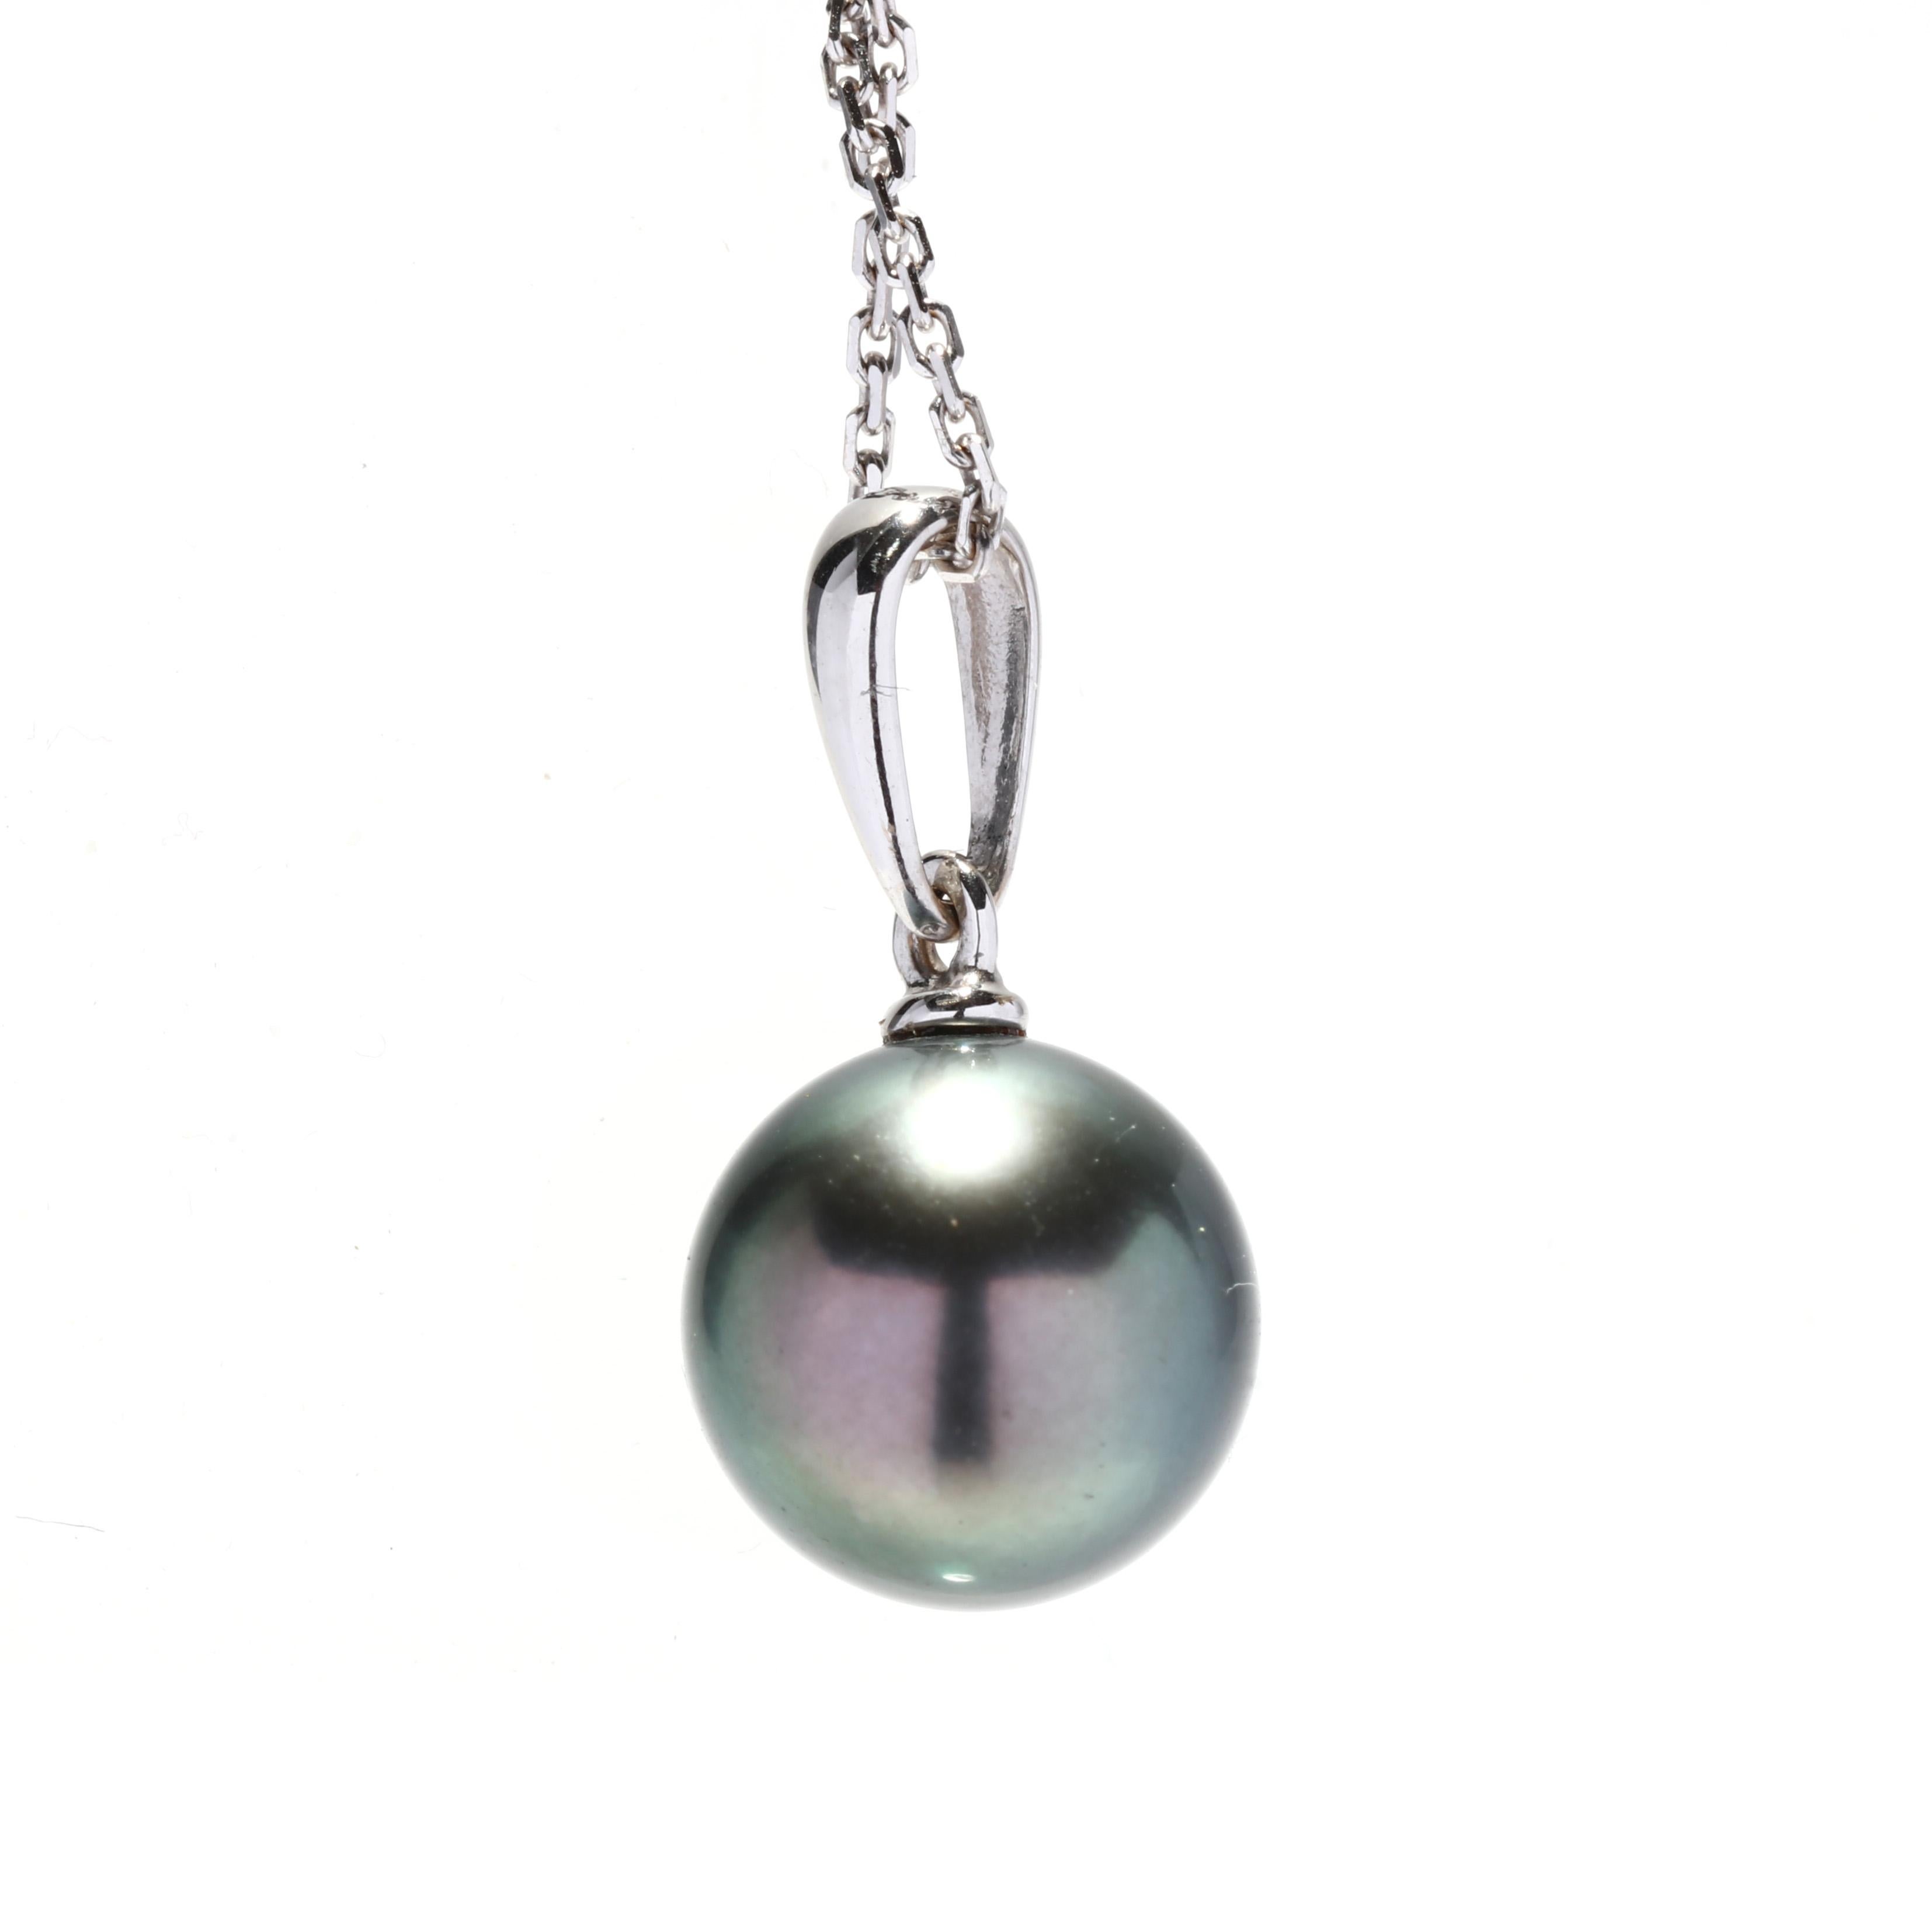 Collier à pendentif solitaire en or blanc 14 carats et perle de Tahiti. Ce collier simple présente une perle de Tahiti ronde suspendue à une fine boucle effilée et à une fine chaîne en câble munie d'un fermoir à anneau à ressort.

Pierres :
- Perle